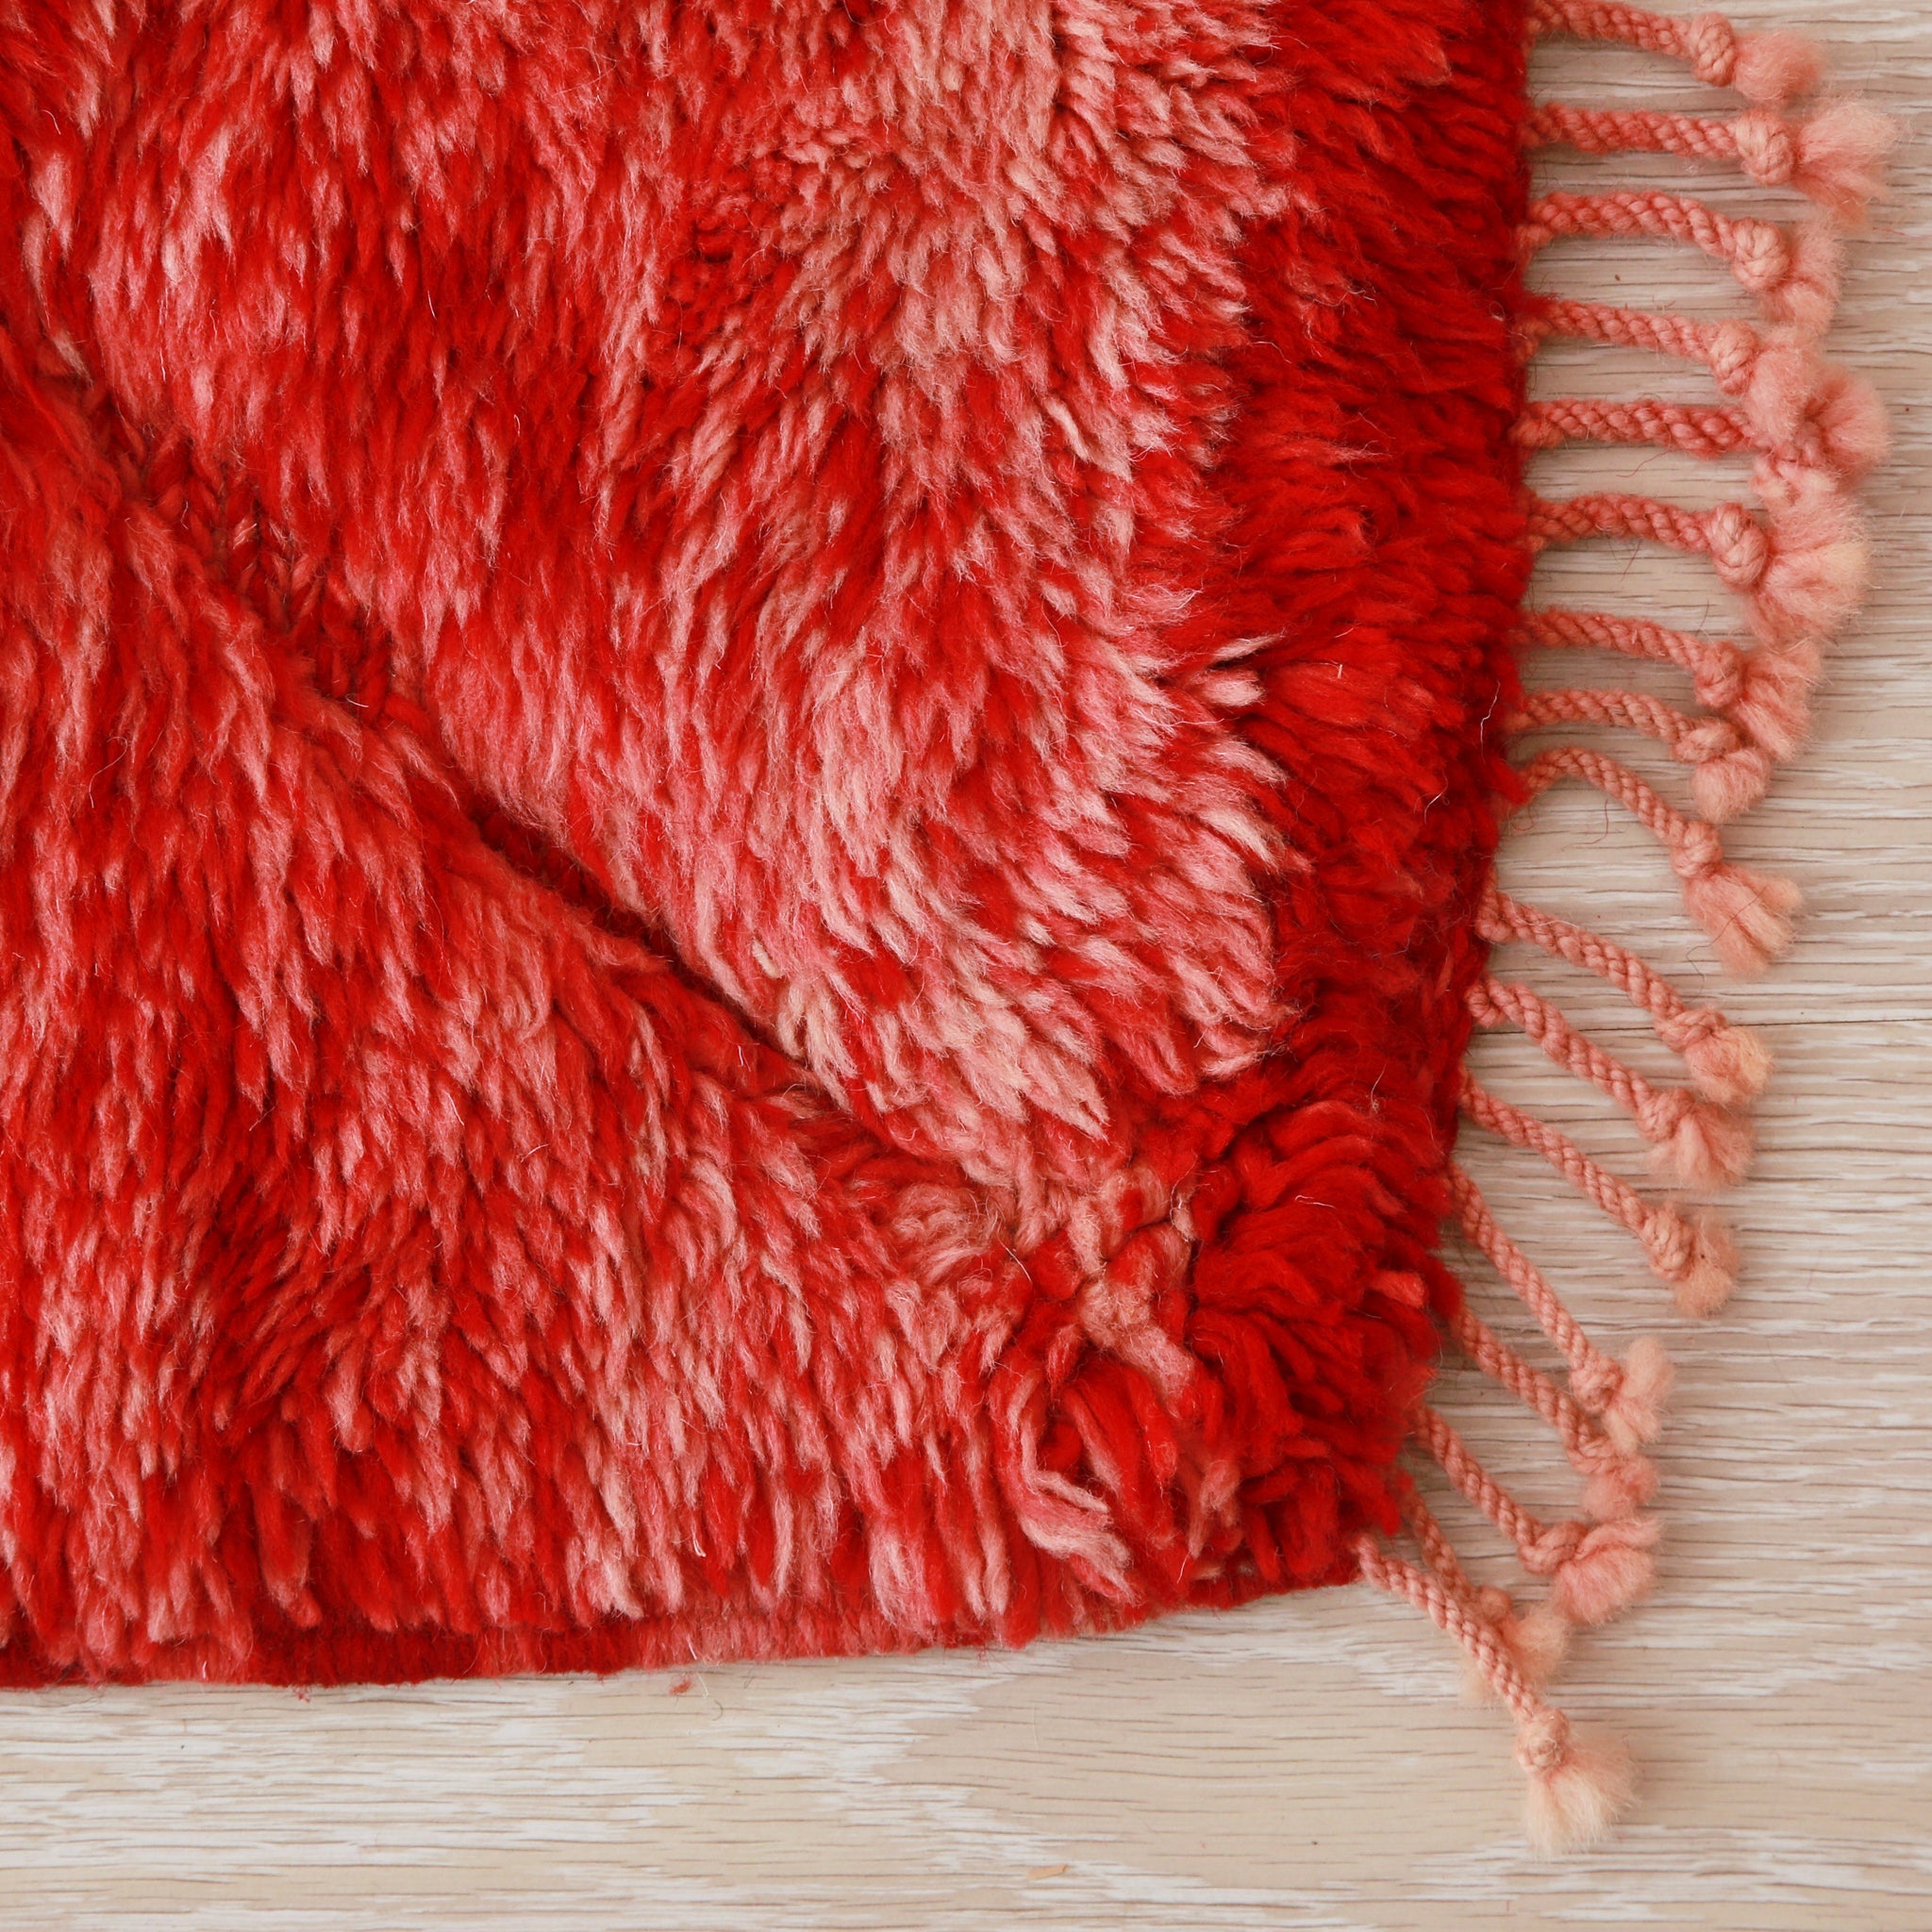 angolo di un tappeto beni mrirt rosso che mette in risalto la lana con diverse sfumature e la corta frangia di un rosso leggero